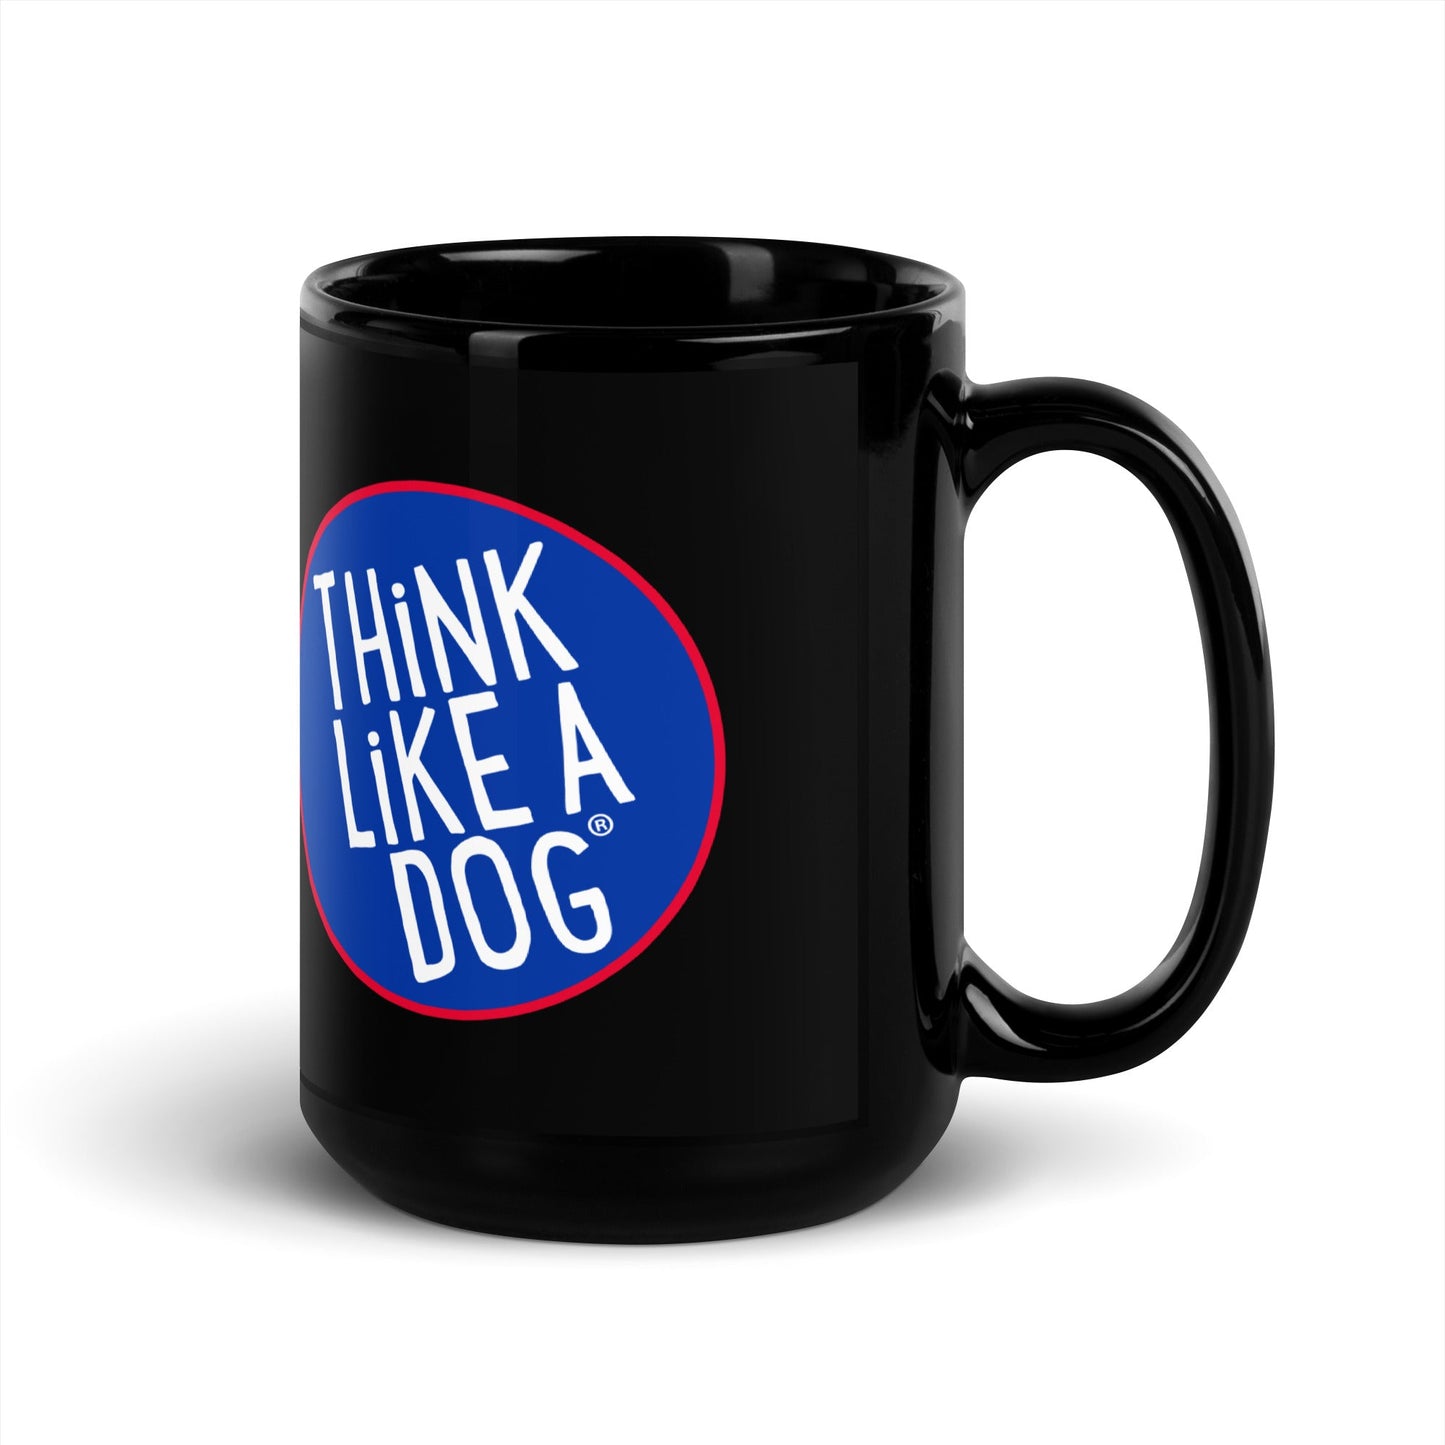 Think Like a Dog THiNK LiKE A DOG® NASA Meatball Colorway Logo on Black Glossy Mug for Dog Lovers.